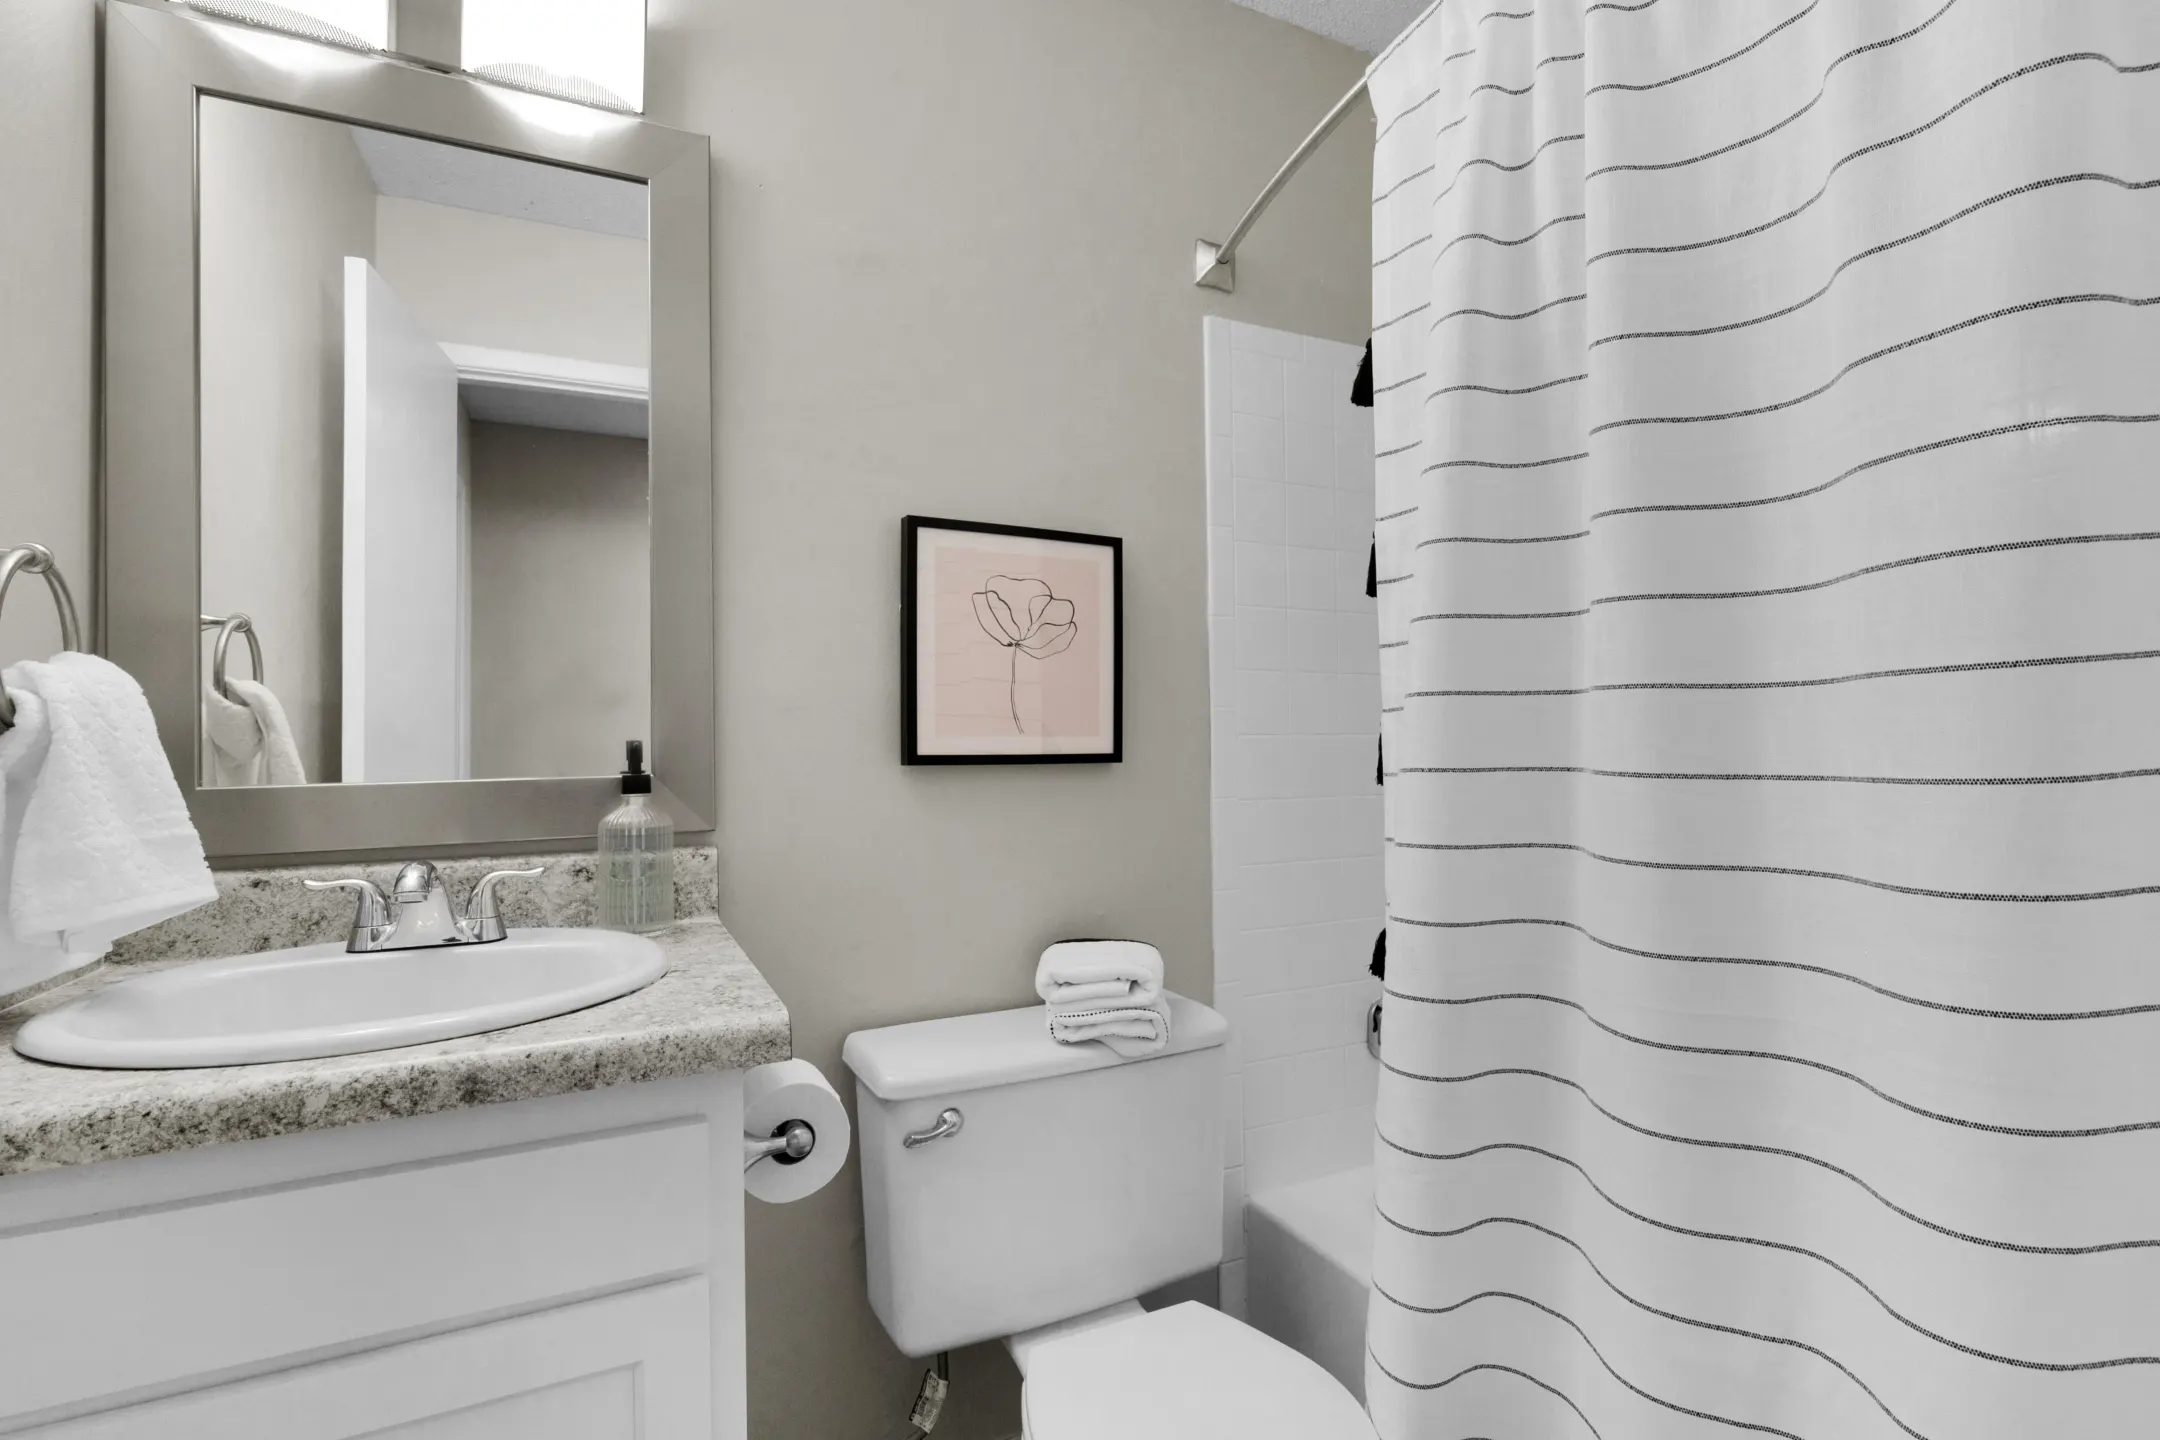 Bathroom - Carondolet Apartments - Mobile, AL